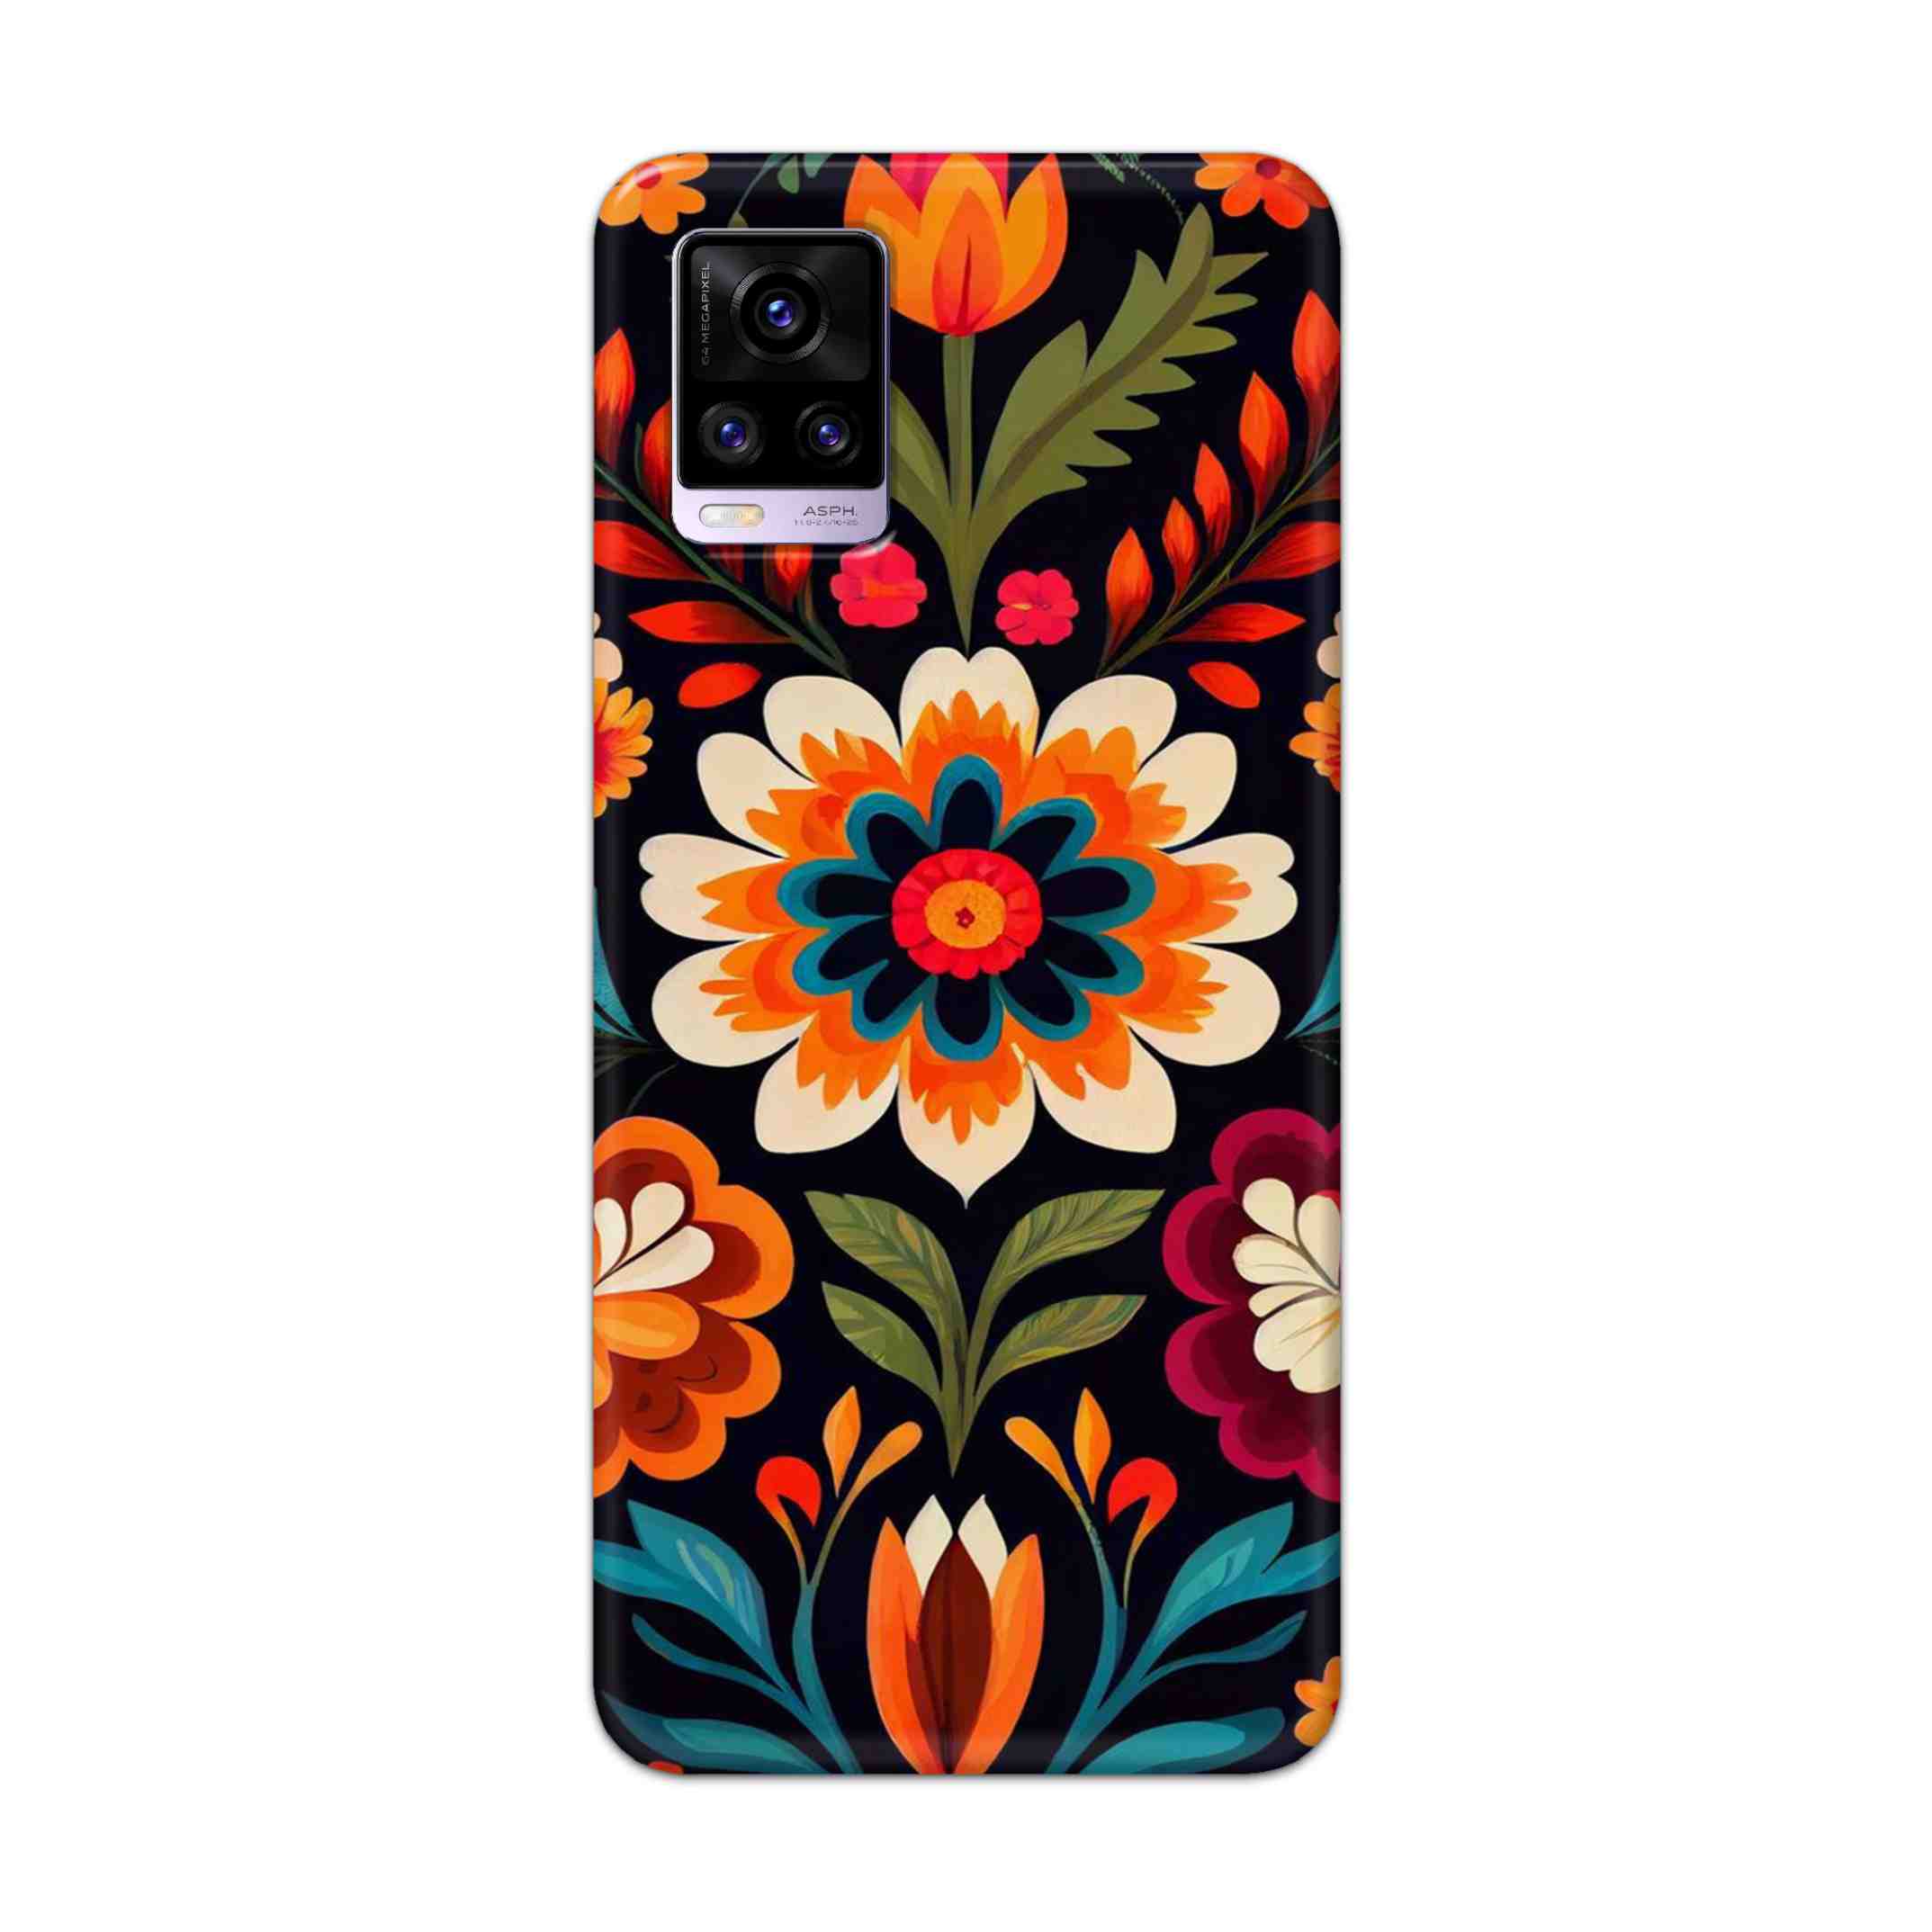 Buy Flower Hard Back Mobile Phone Case Cover For Vivo V20 Online